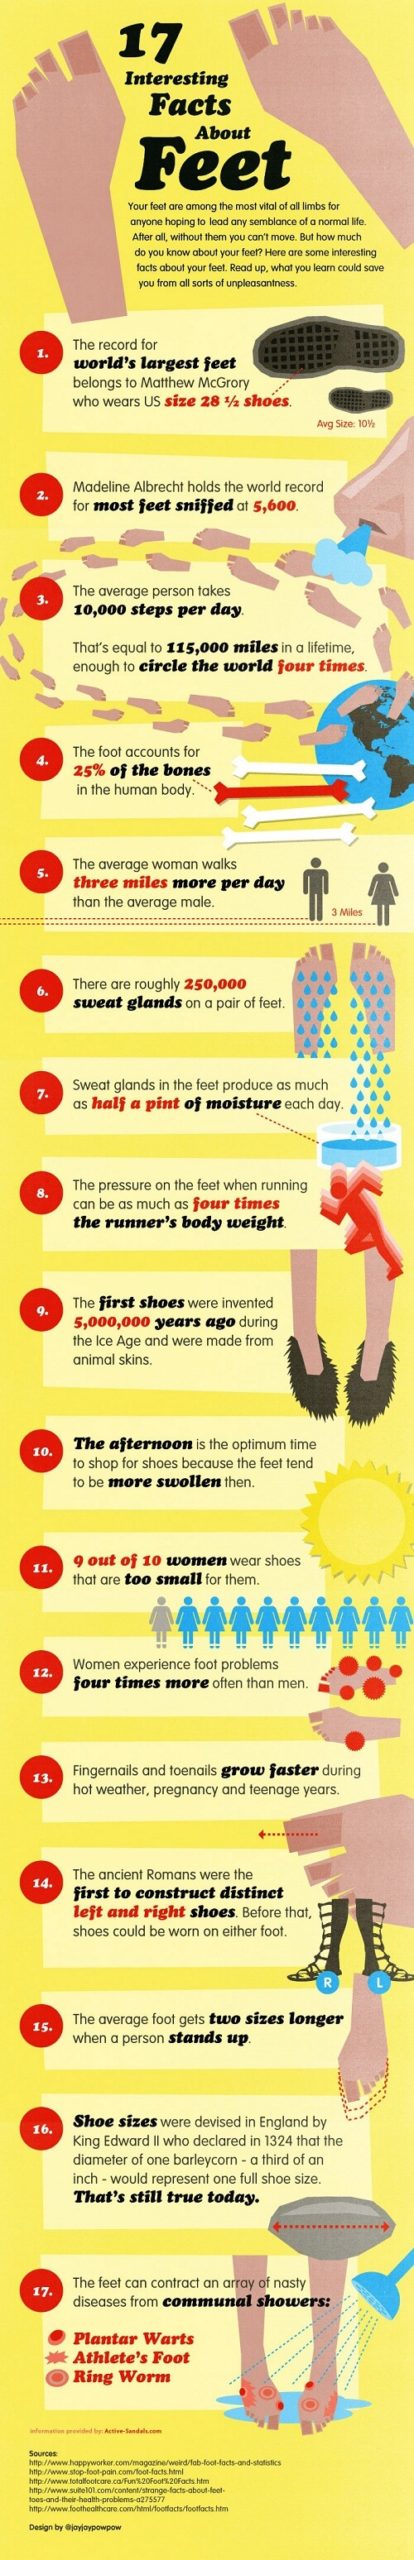 Datos curiosos sobre los pies que debes conocer #infografia